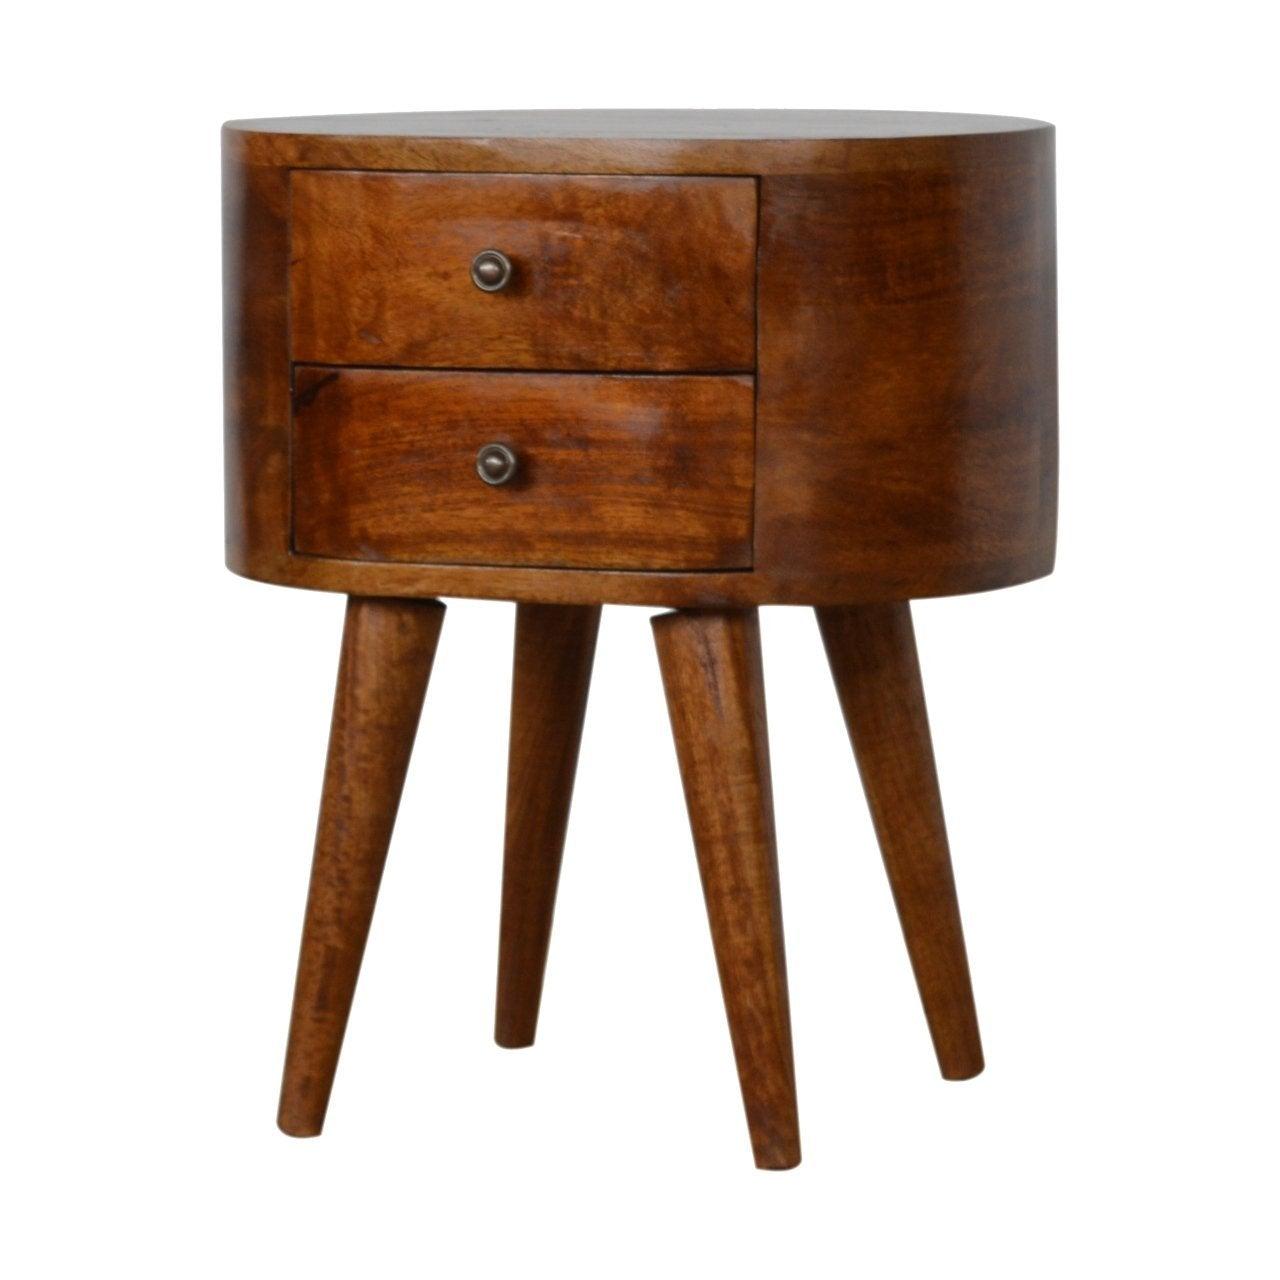 Chestnut rounded bedside table - crimblefest furniture - image 2